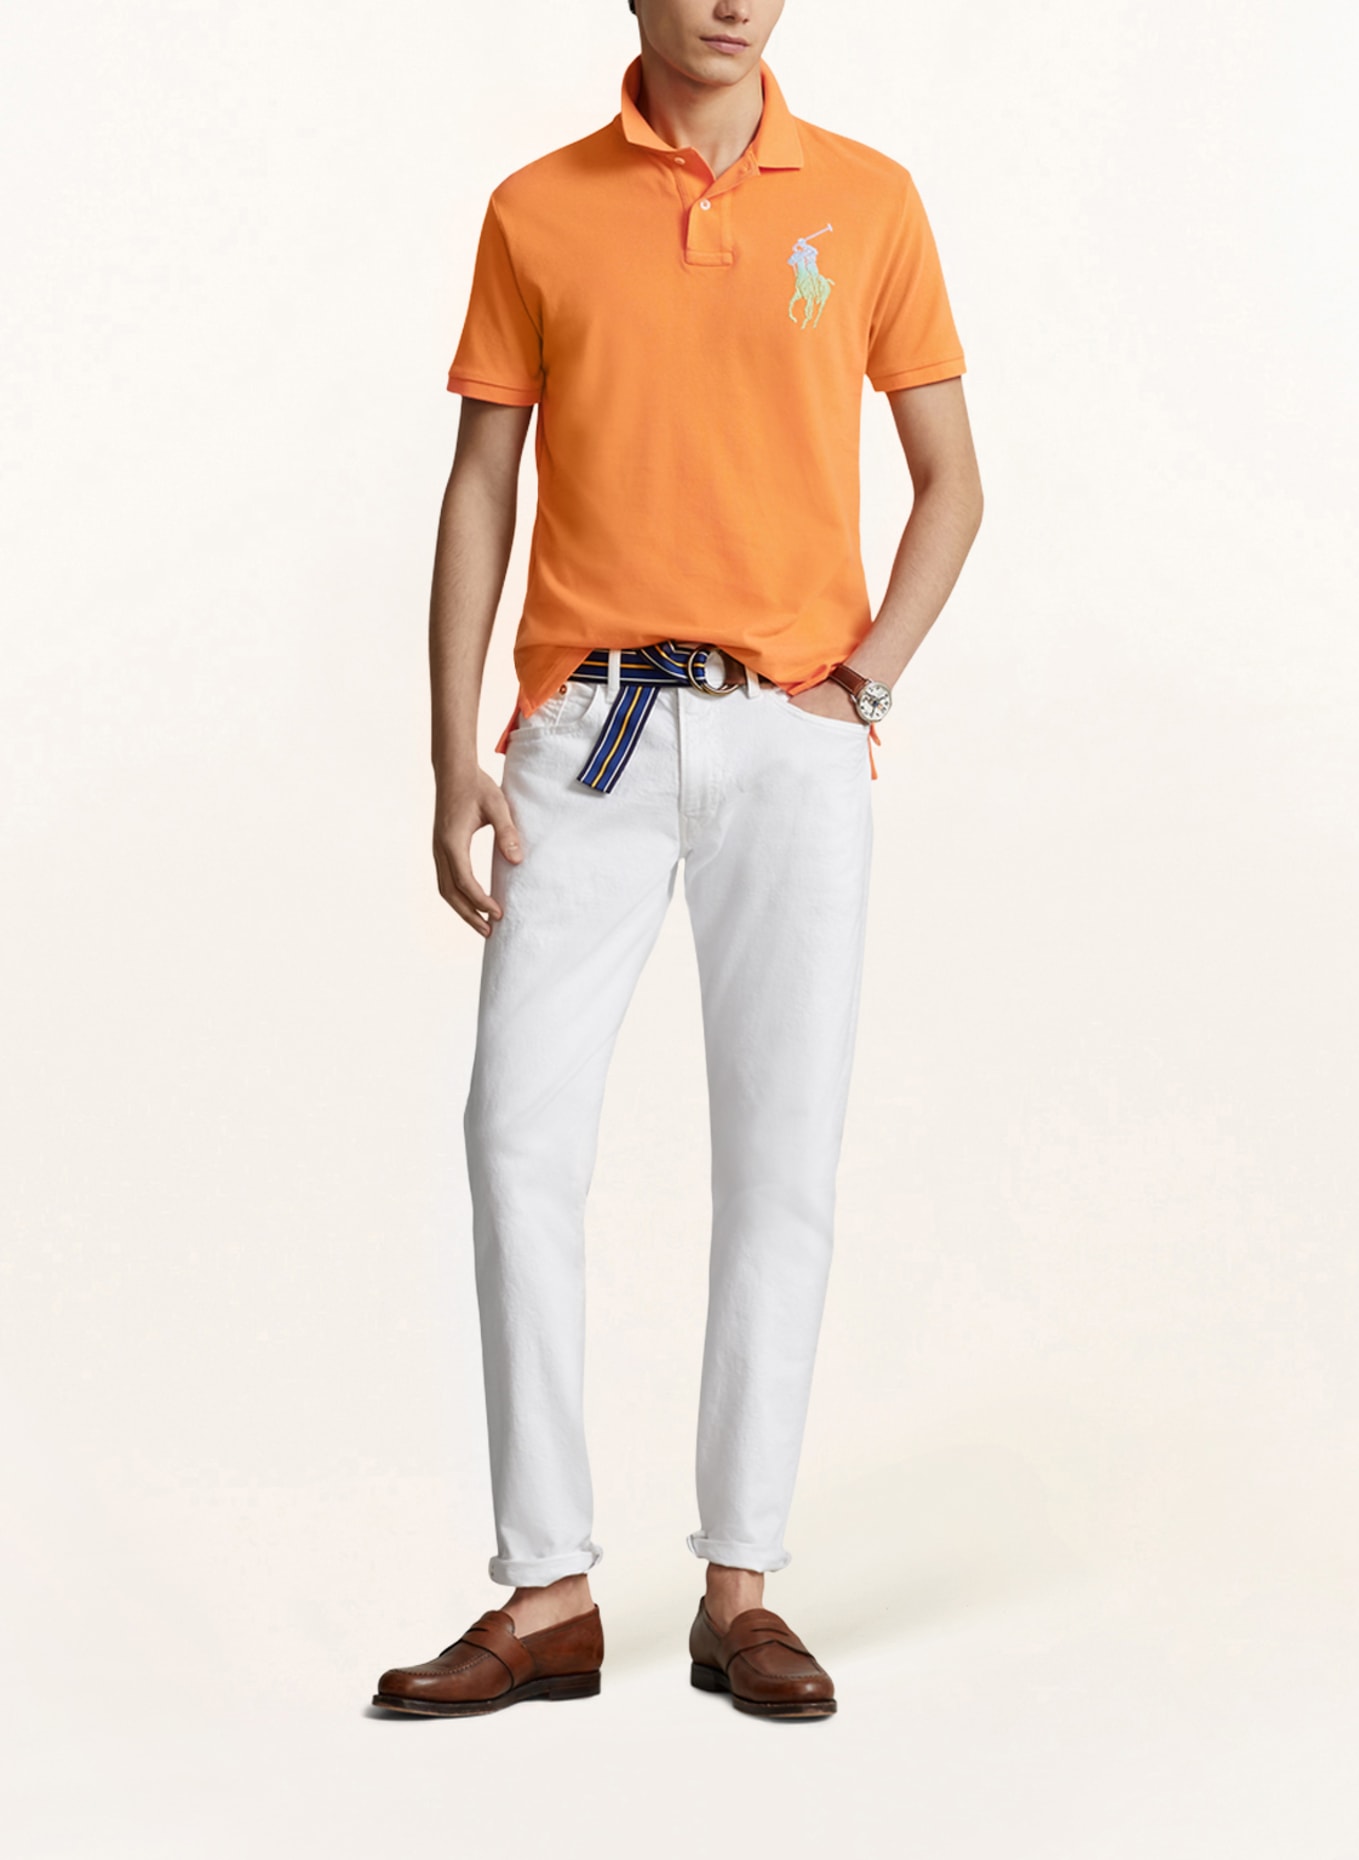 POLO RALPH LAUREN Piqué polo shirt custom slim fit, Color: ORANGE (Image 2)